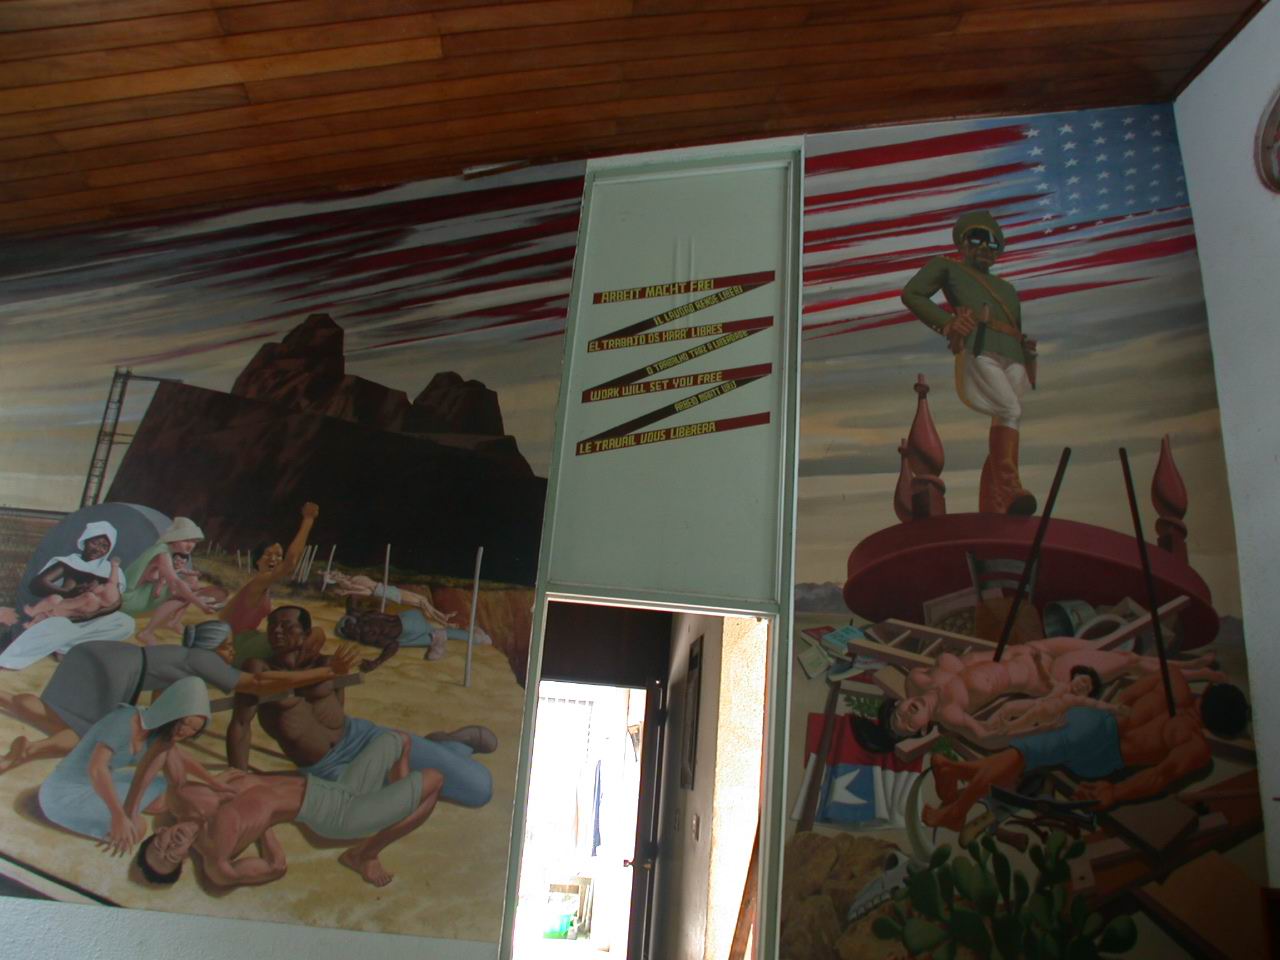 Detalle de una pintura mural del Maestro AURELIO C. en el CEMOAR, Managua, Nicaragua